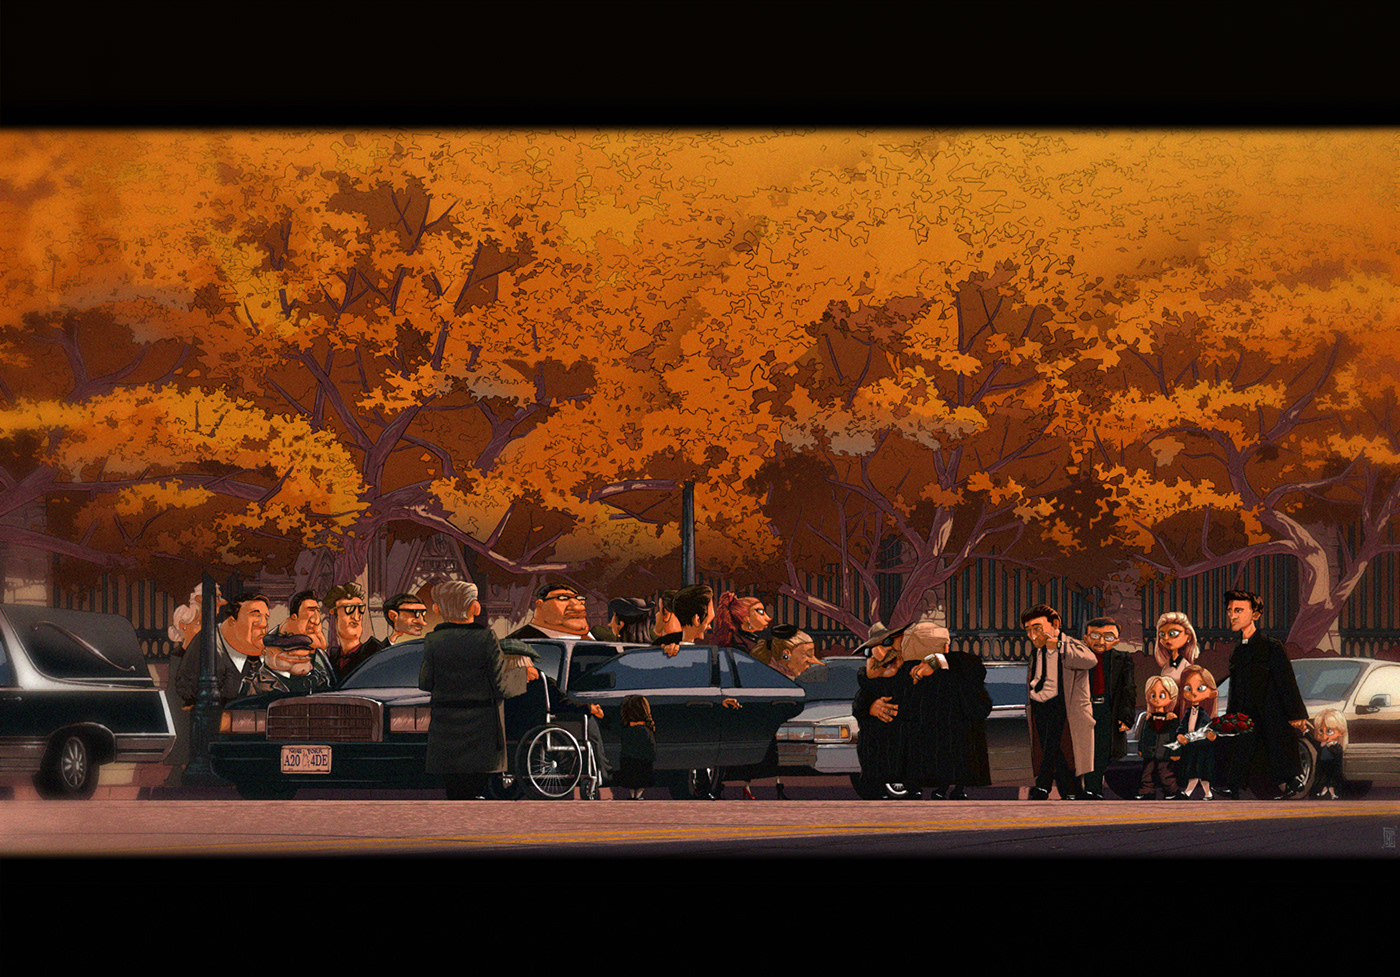 90s autumn car cartoon cemetery characterdesign death Fall mafia newyork